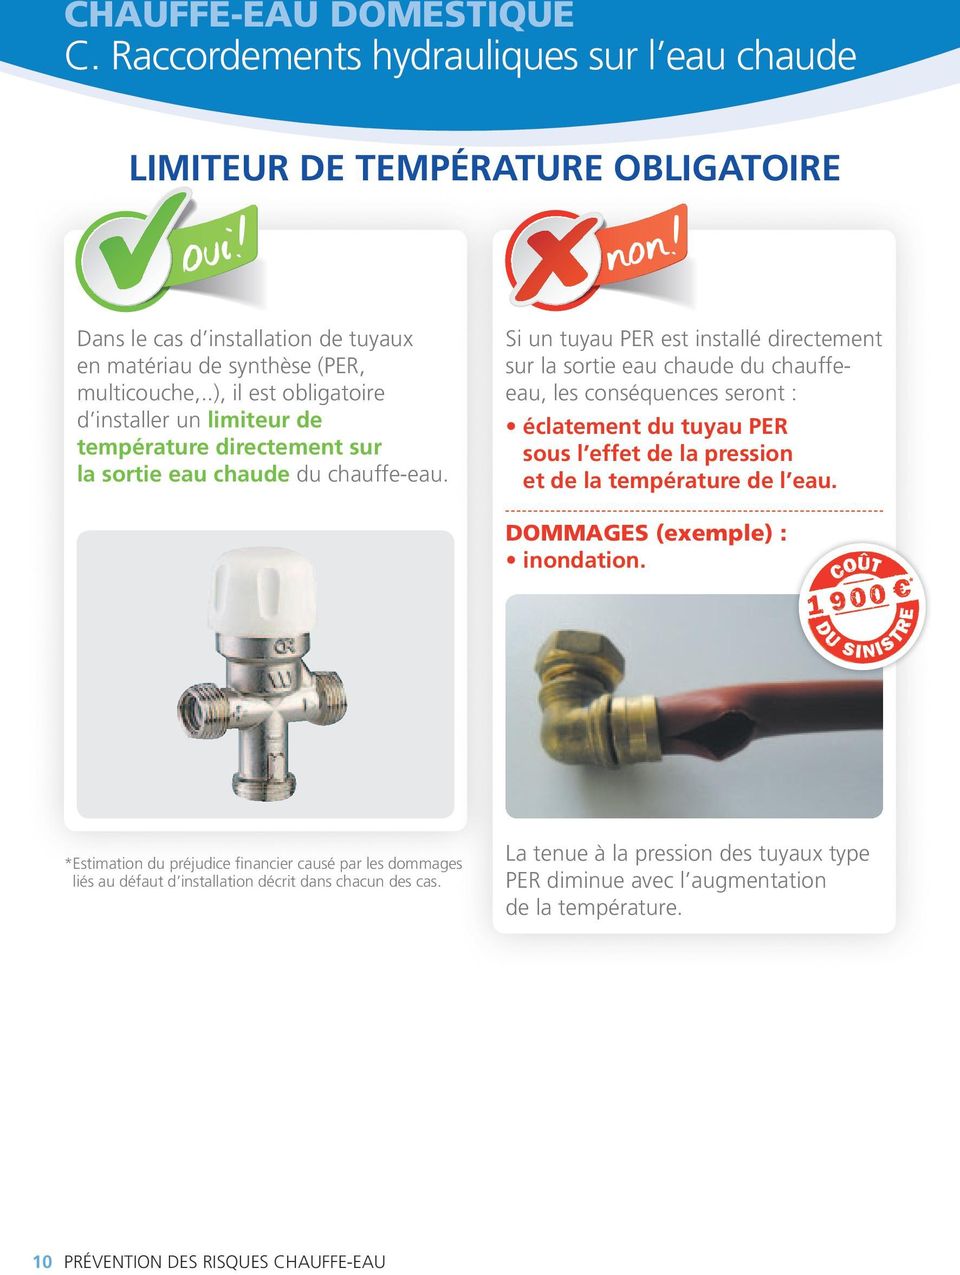 Si un tuyau PER est installé directement sur la sortie eau chaude du chauffeeau, les conséquences seront : éclatement du tuyau PER sous l effet de la pression et de la température de l eau.